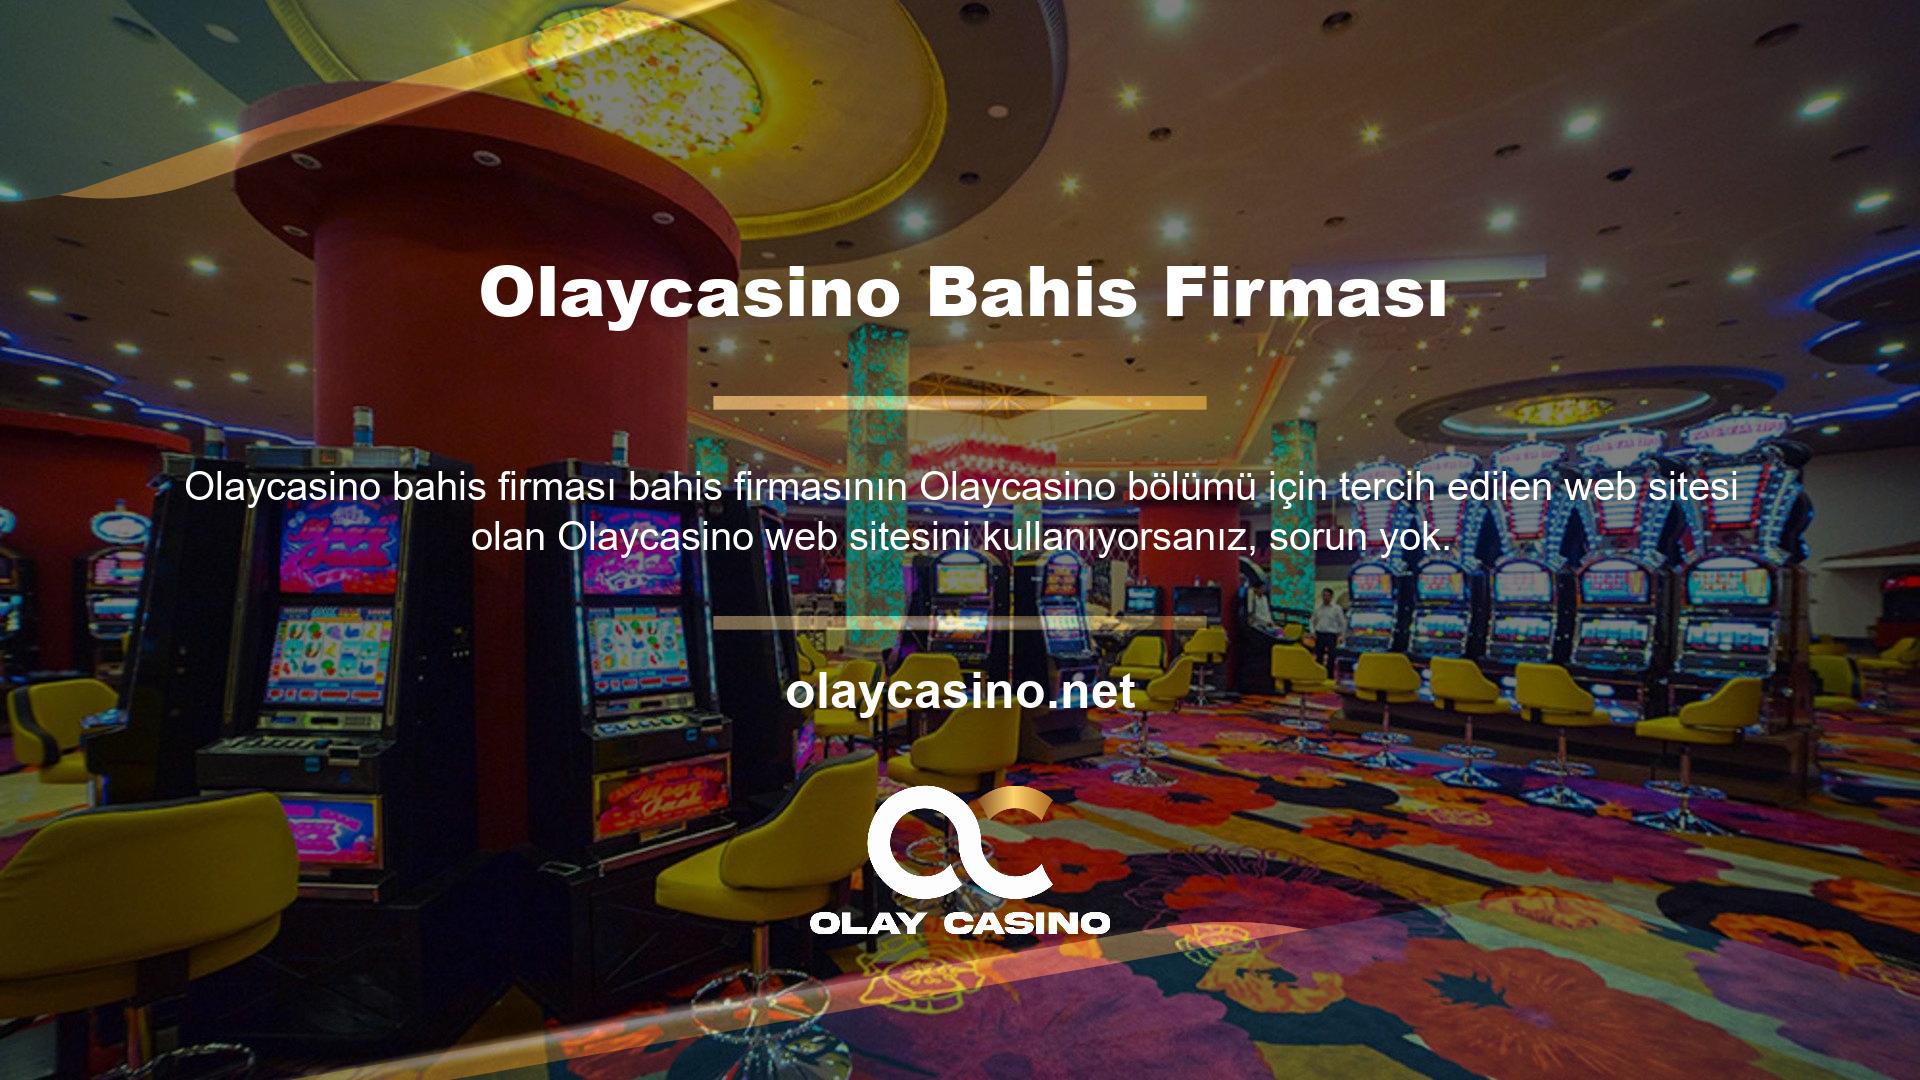 Sitede canlı casino oyunları oynama alternatifi de bulunmaktadır